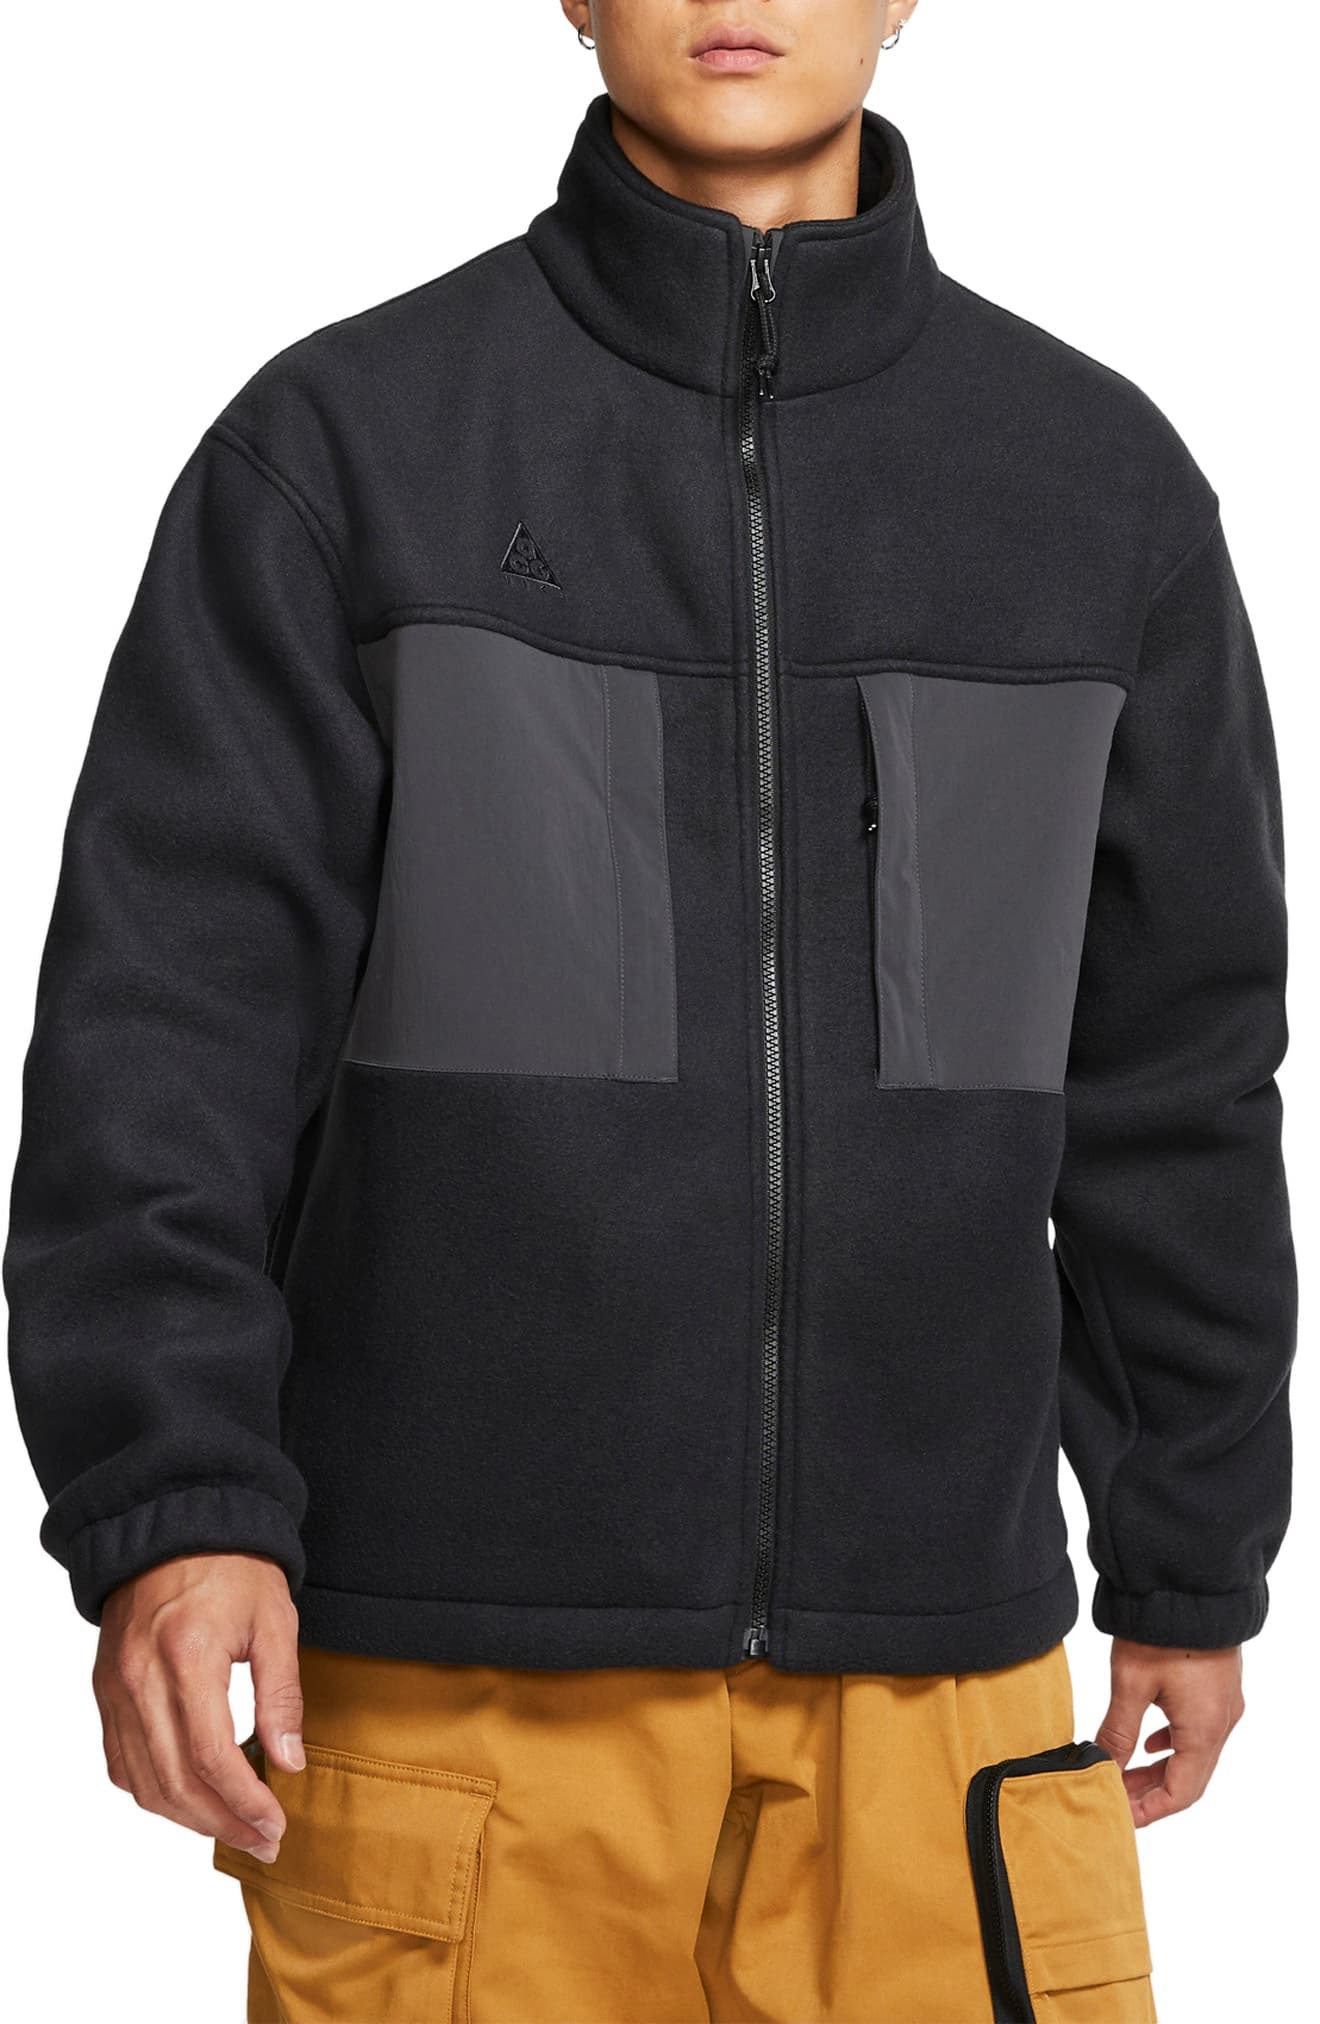 Nike Acg Fleece Jacket, $150 